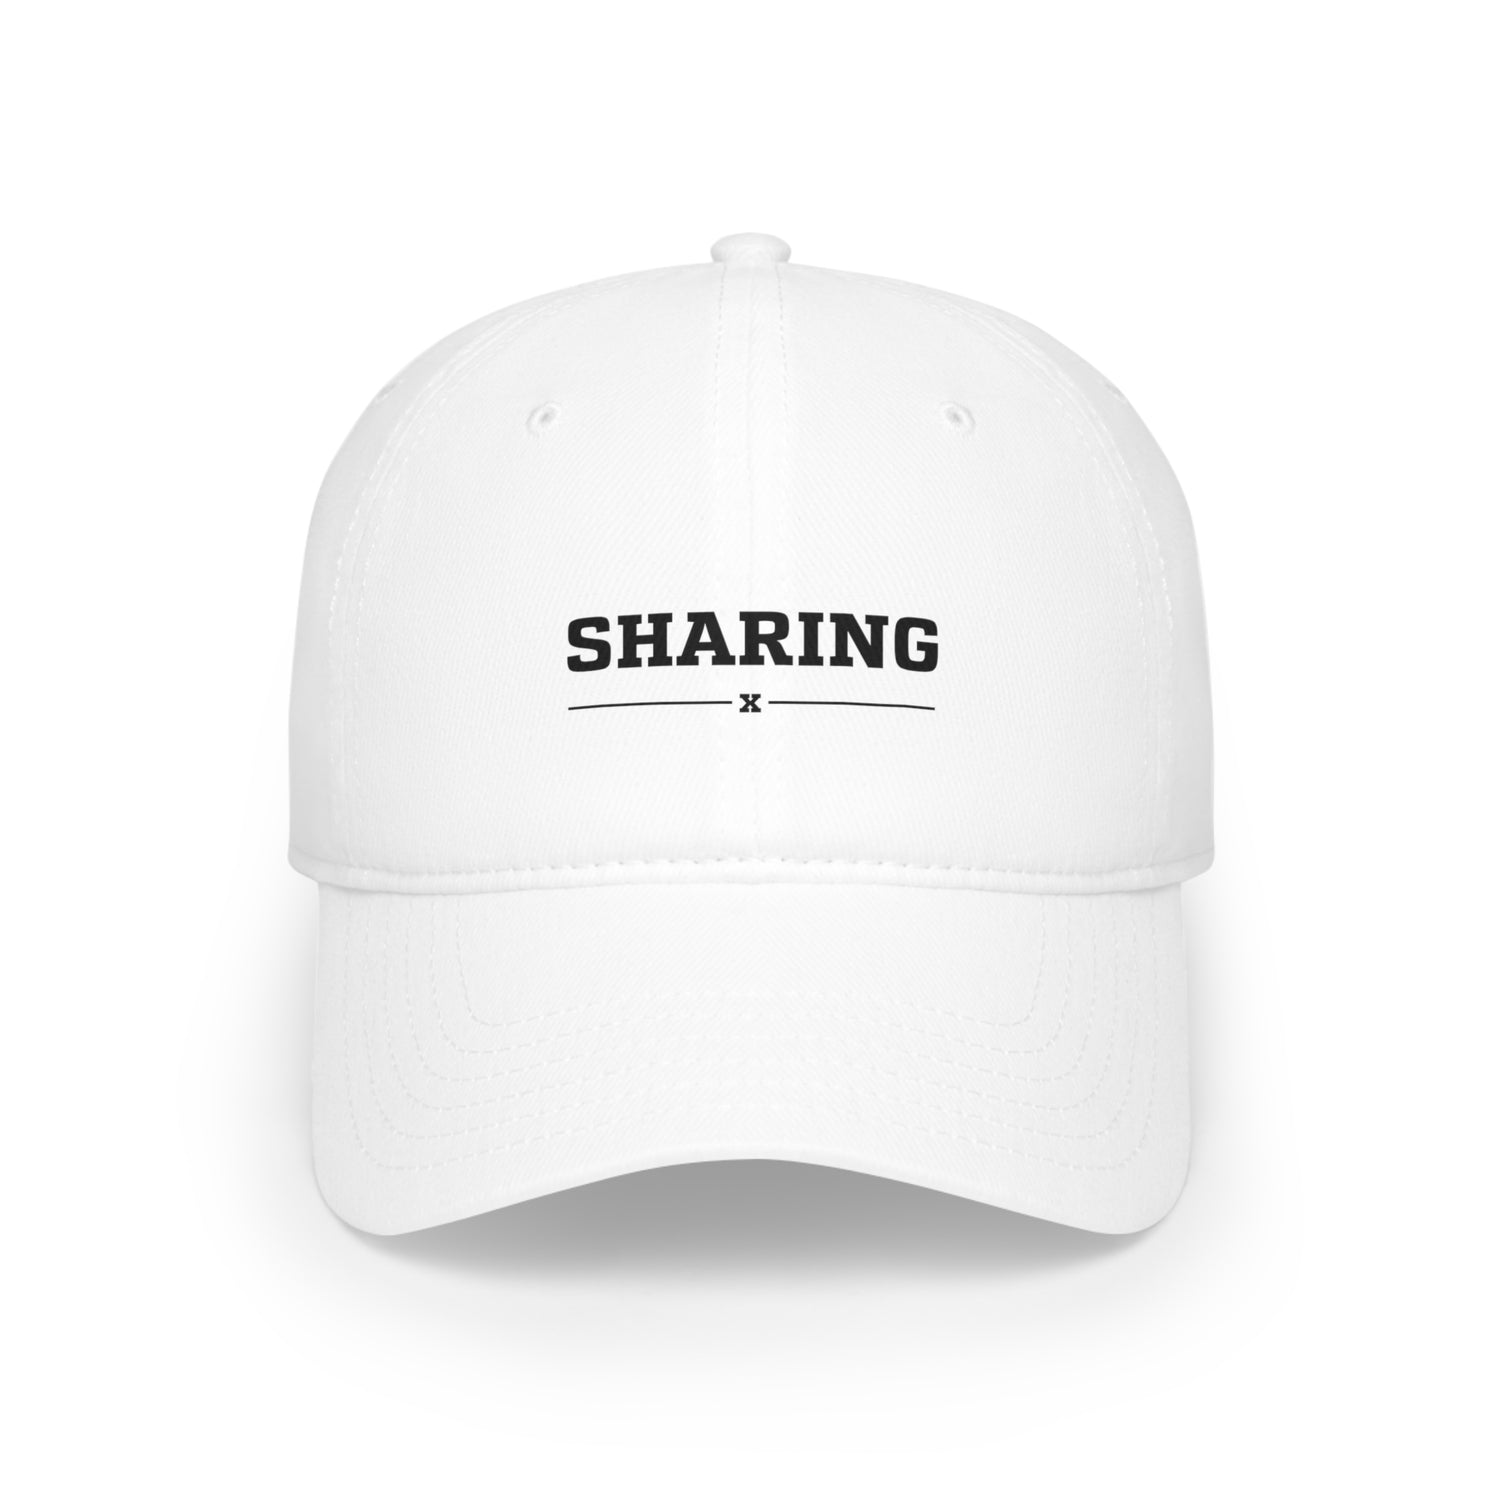 Sharing Baseball Cap